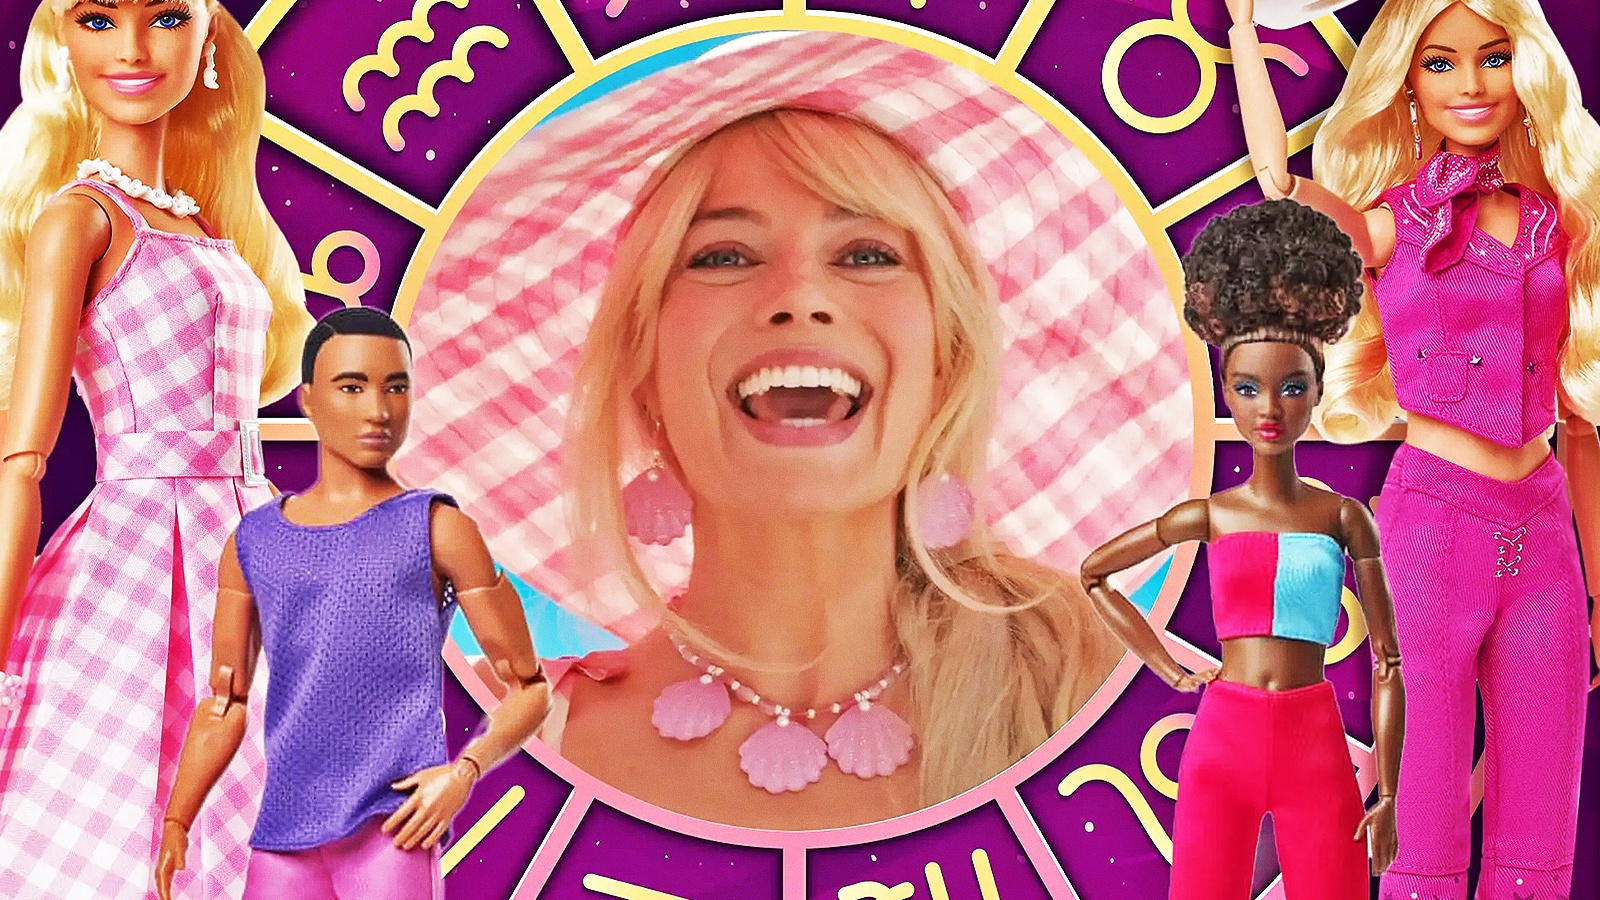 L'Oroscopo di Barbie: scopri chi è il tuo segno zodiacale a Barbieland